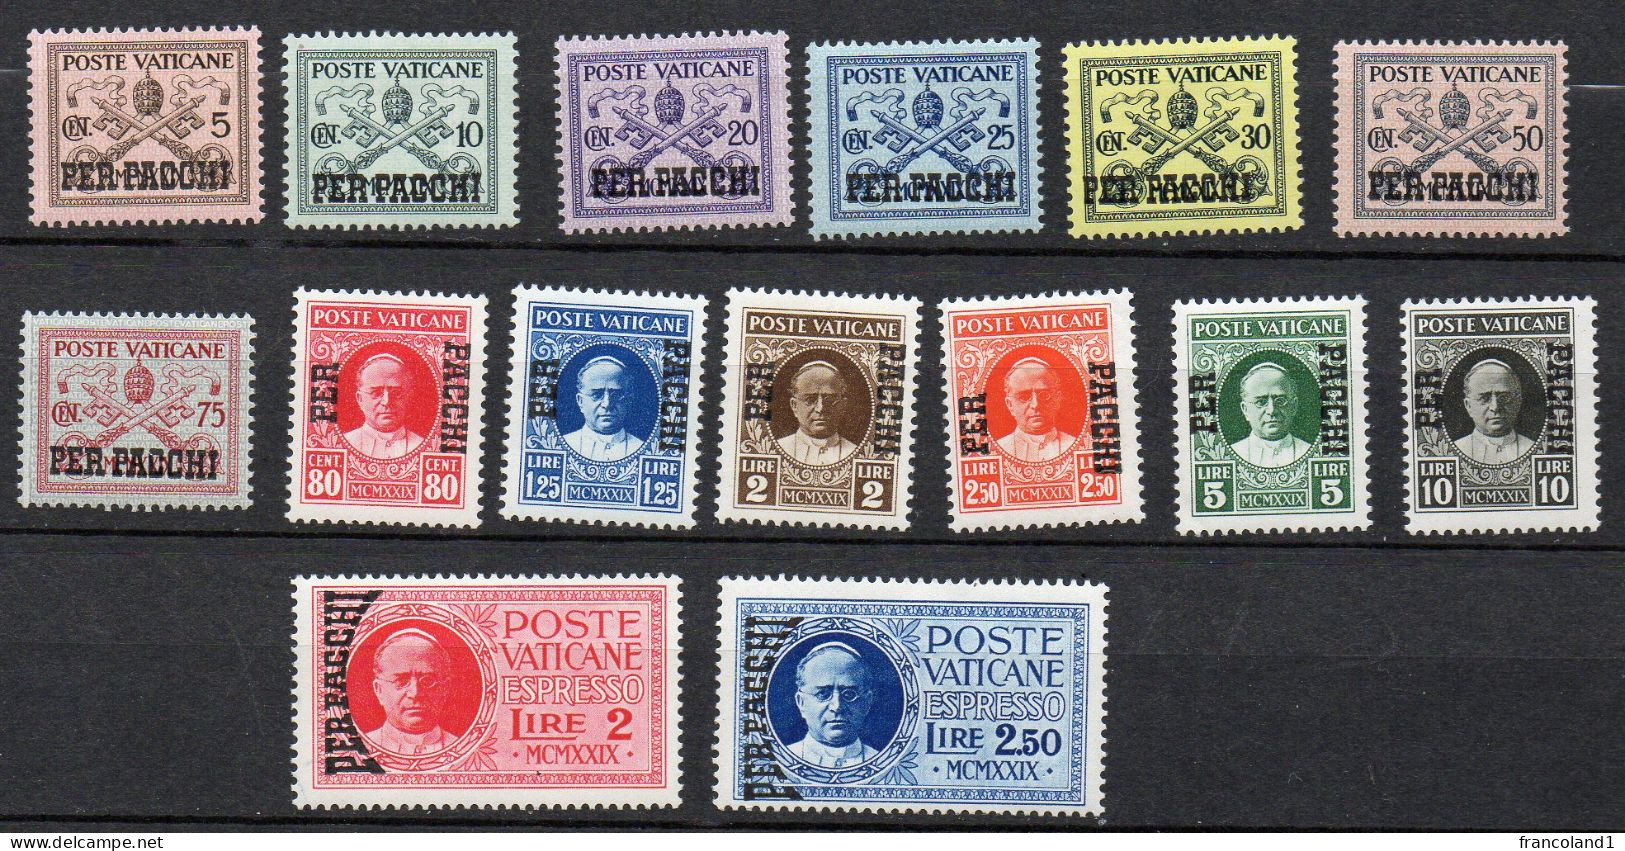 1931 Vaticano Pacchi Postali N. 1 - 15 Completa Con Espressi Serie Integra MNH** Sassone 150 Euro - Pacchi Postali